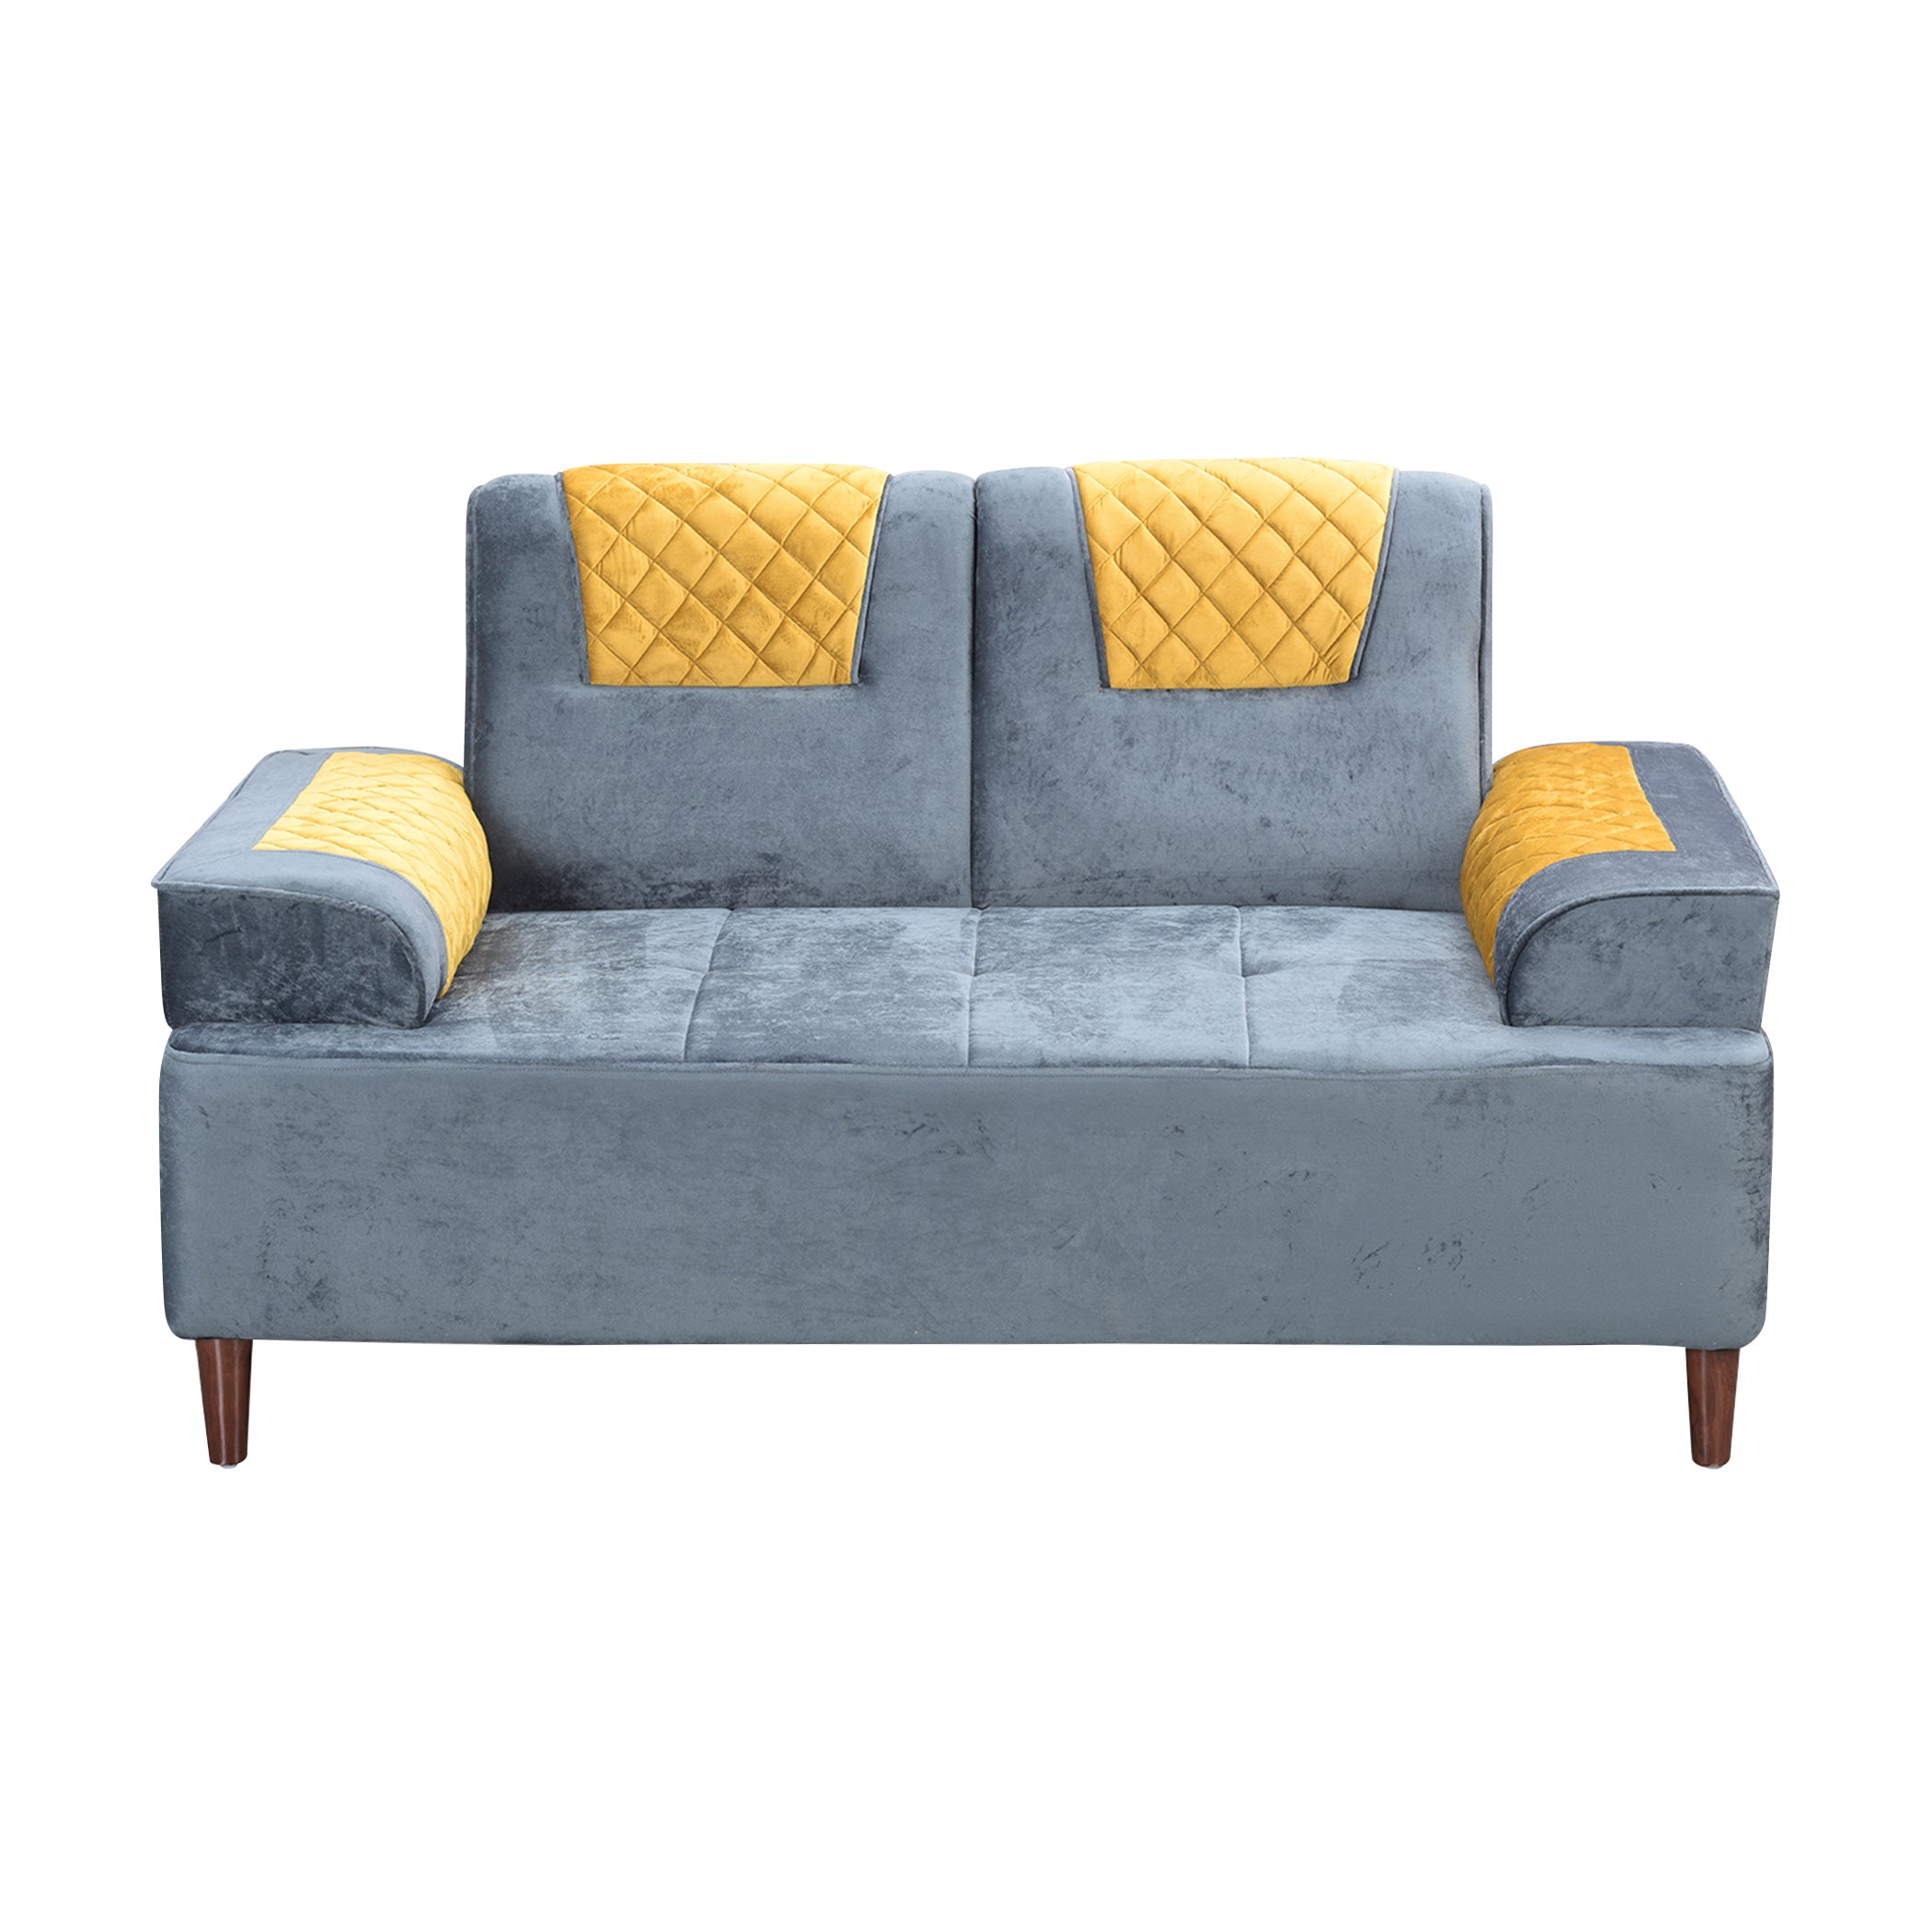 Austin GreyYellow 2S Sofa by Zorin Zorin